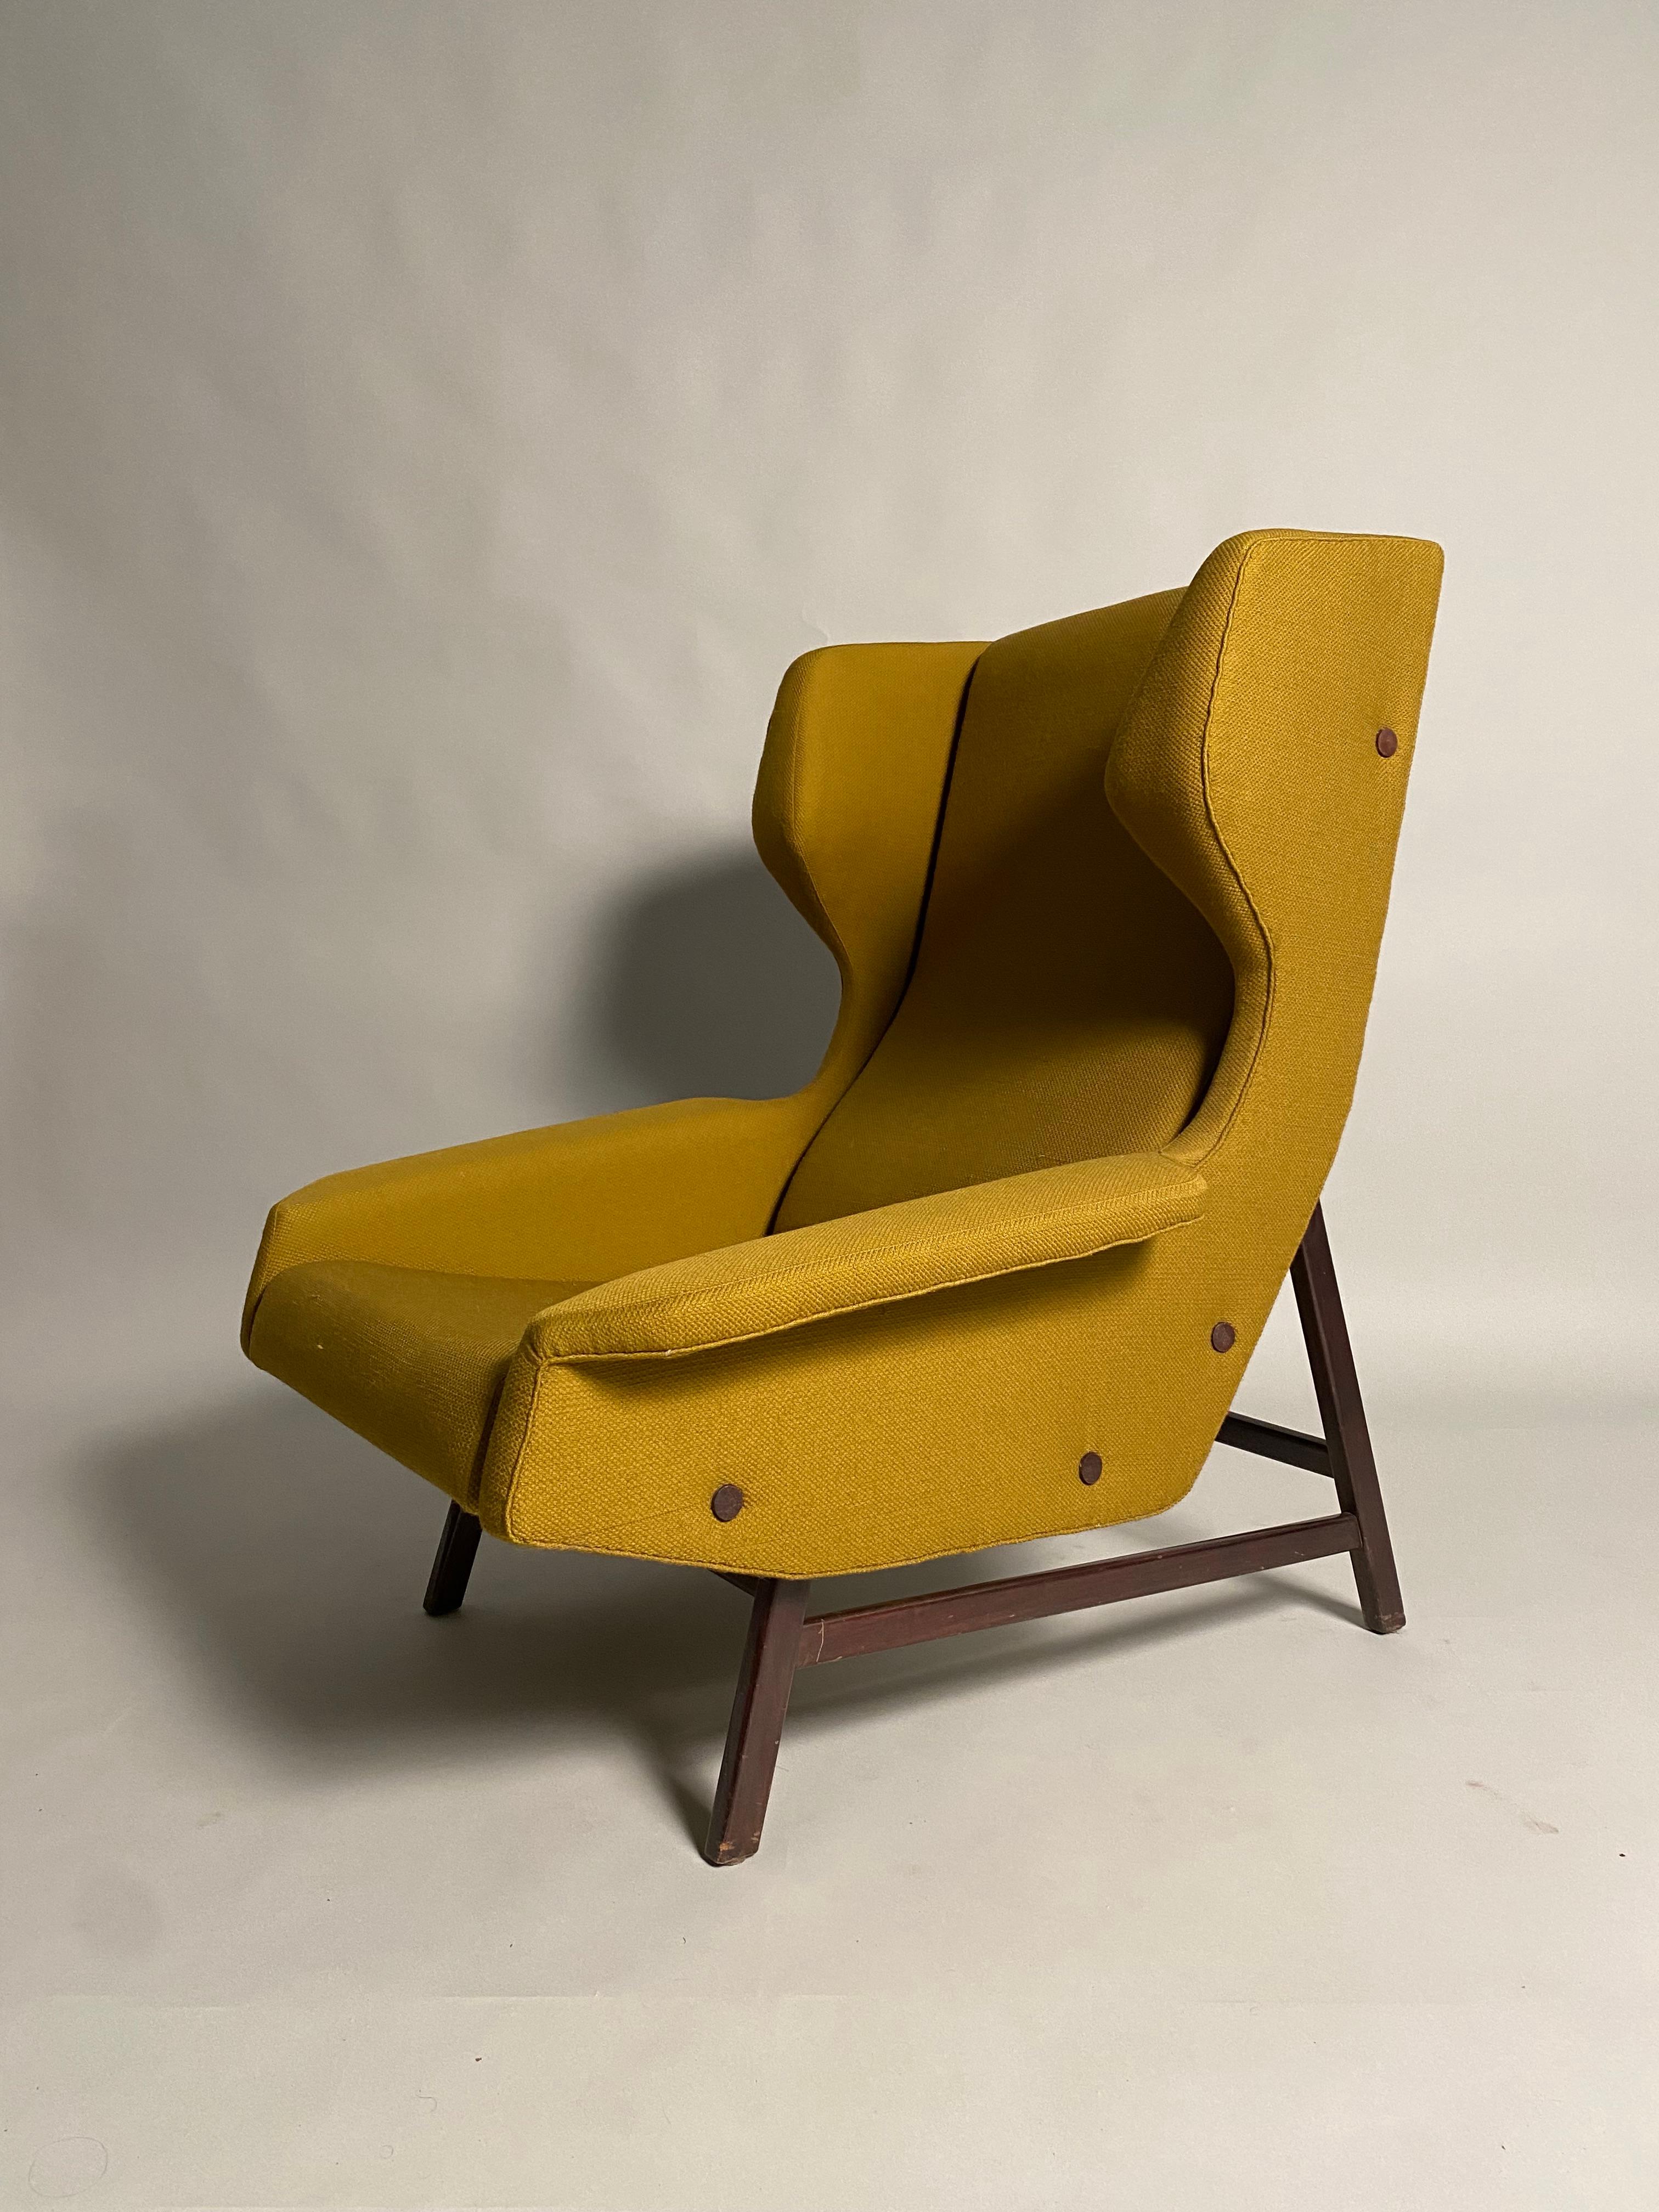 Seltenes Paar Wingback-Sessel aus einem bedeutenden Chalet in den italienischen Alpen. Entworfen von dem italienischen Architekten Gianfranco Frattini für die Firma Cassina im Jahr 1959. Der Stoff, der sich in einem ausgezeichneten Erhaltungszustand